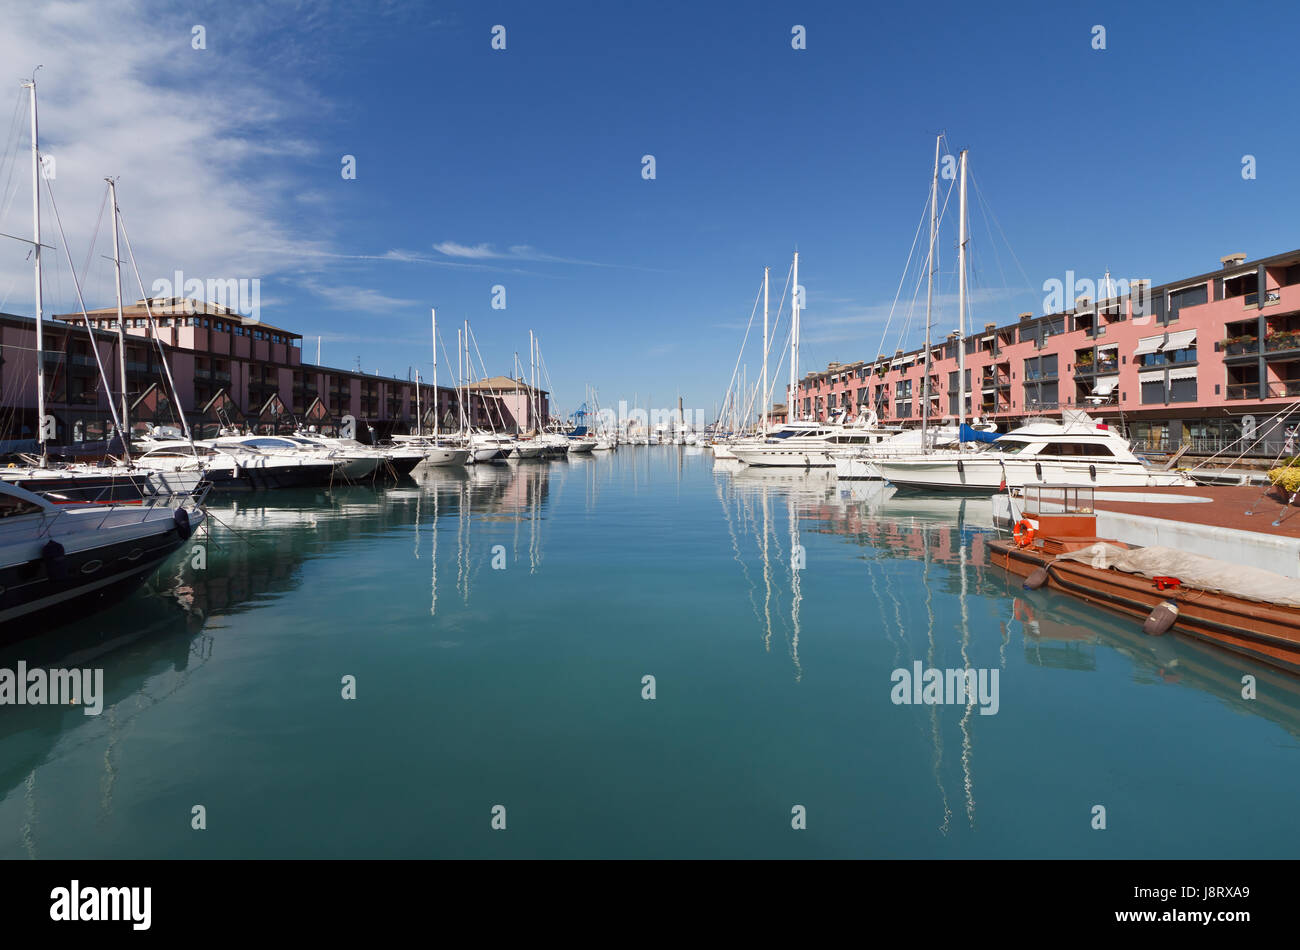 Hafen, Hafen, Boot, Genua, Segel, Italien, Ruderboot, Segelboot, Segelboot, Stockfoto